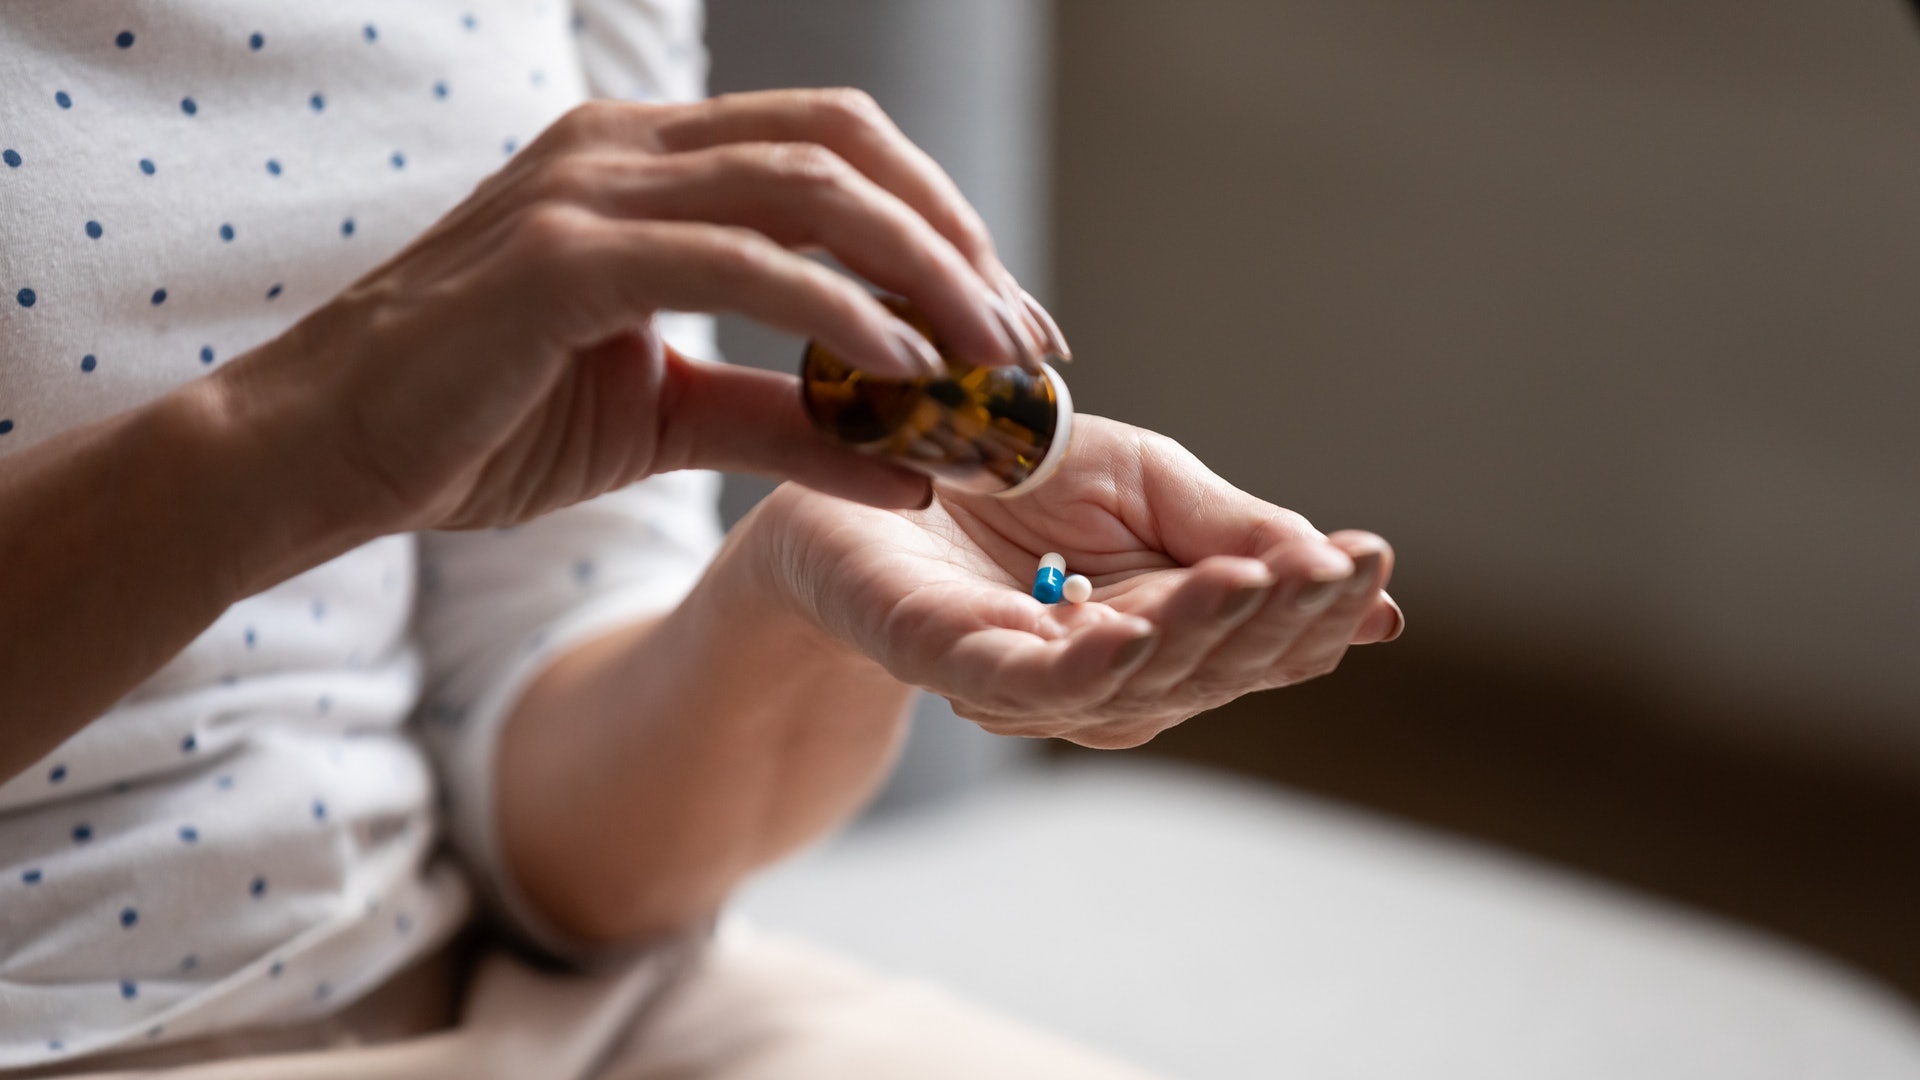 治療前患者清楚藥物的副作用，能夠提高患者對治療的依從性。